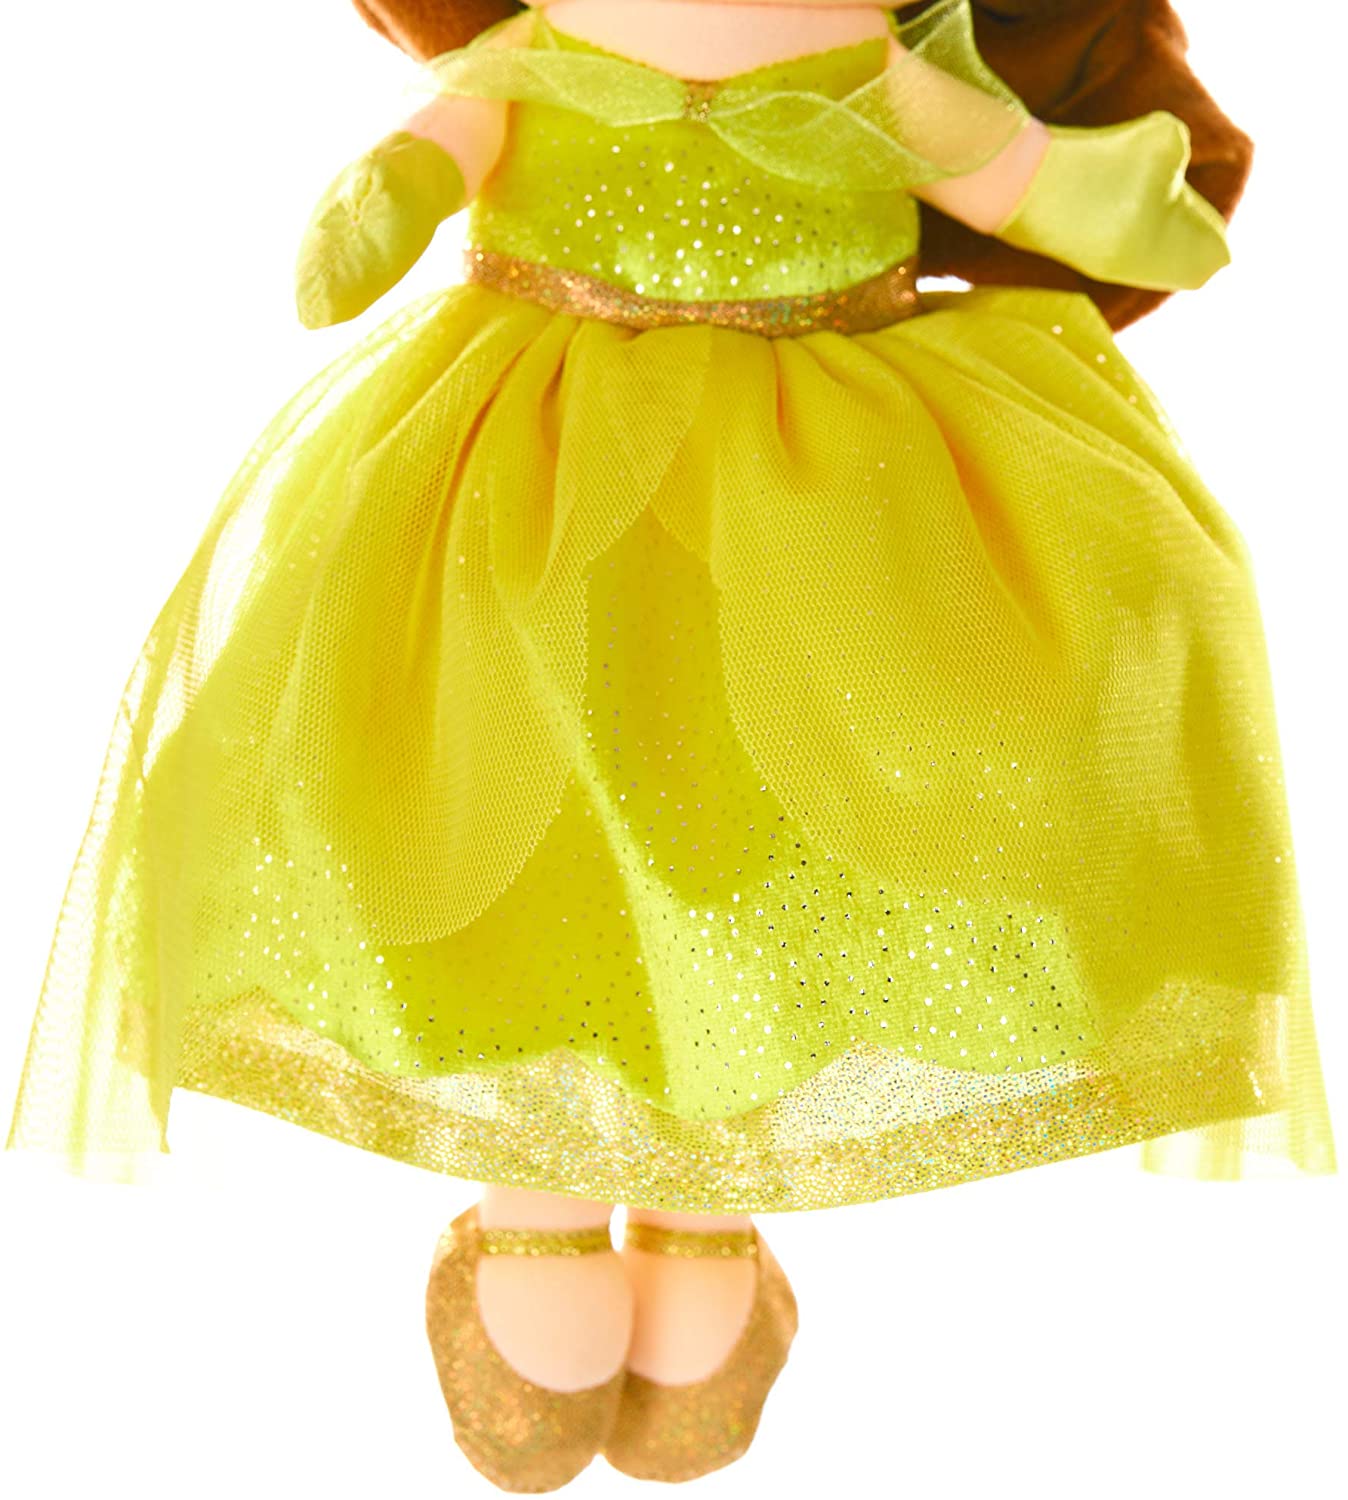 Disney Belle Musical Plush Doll